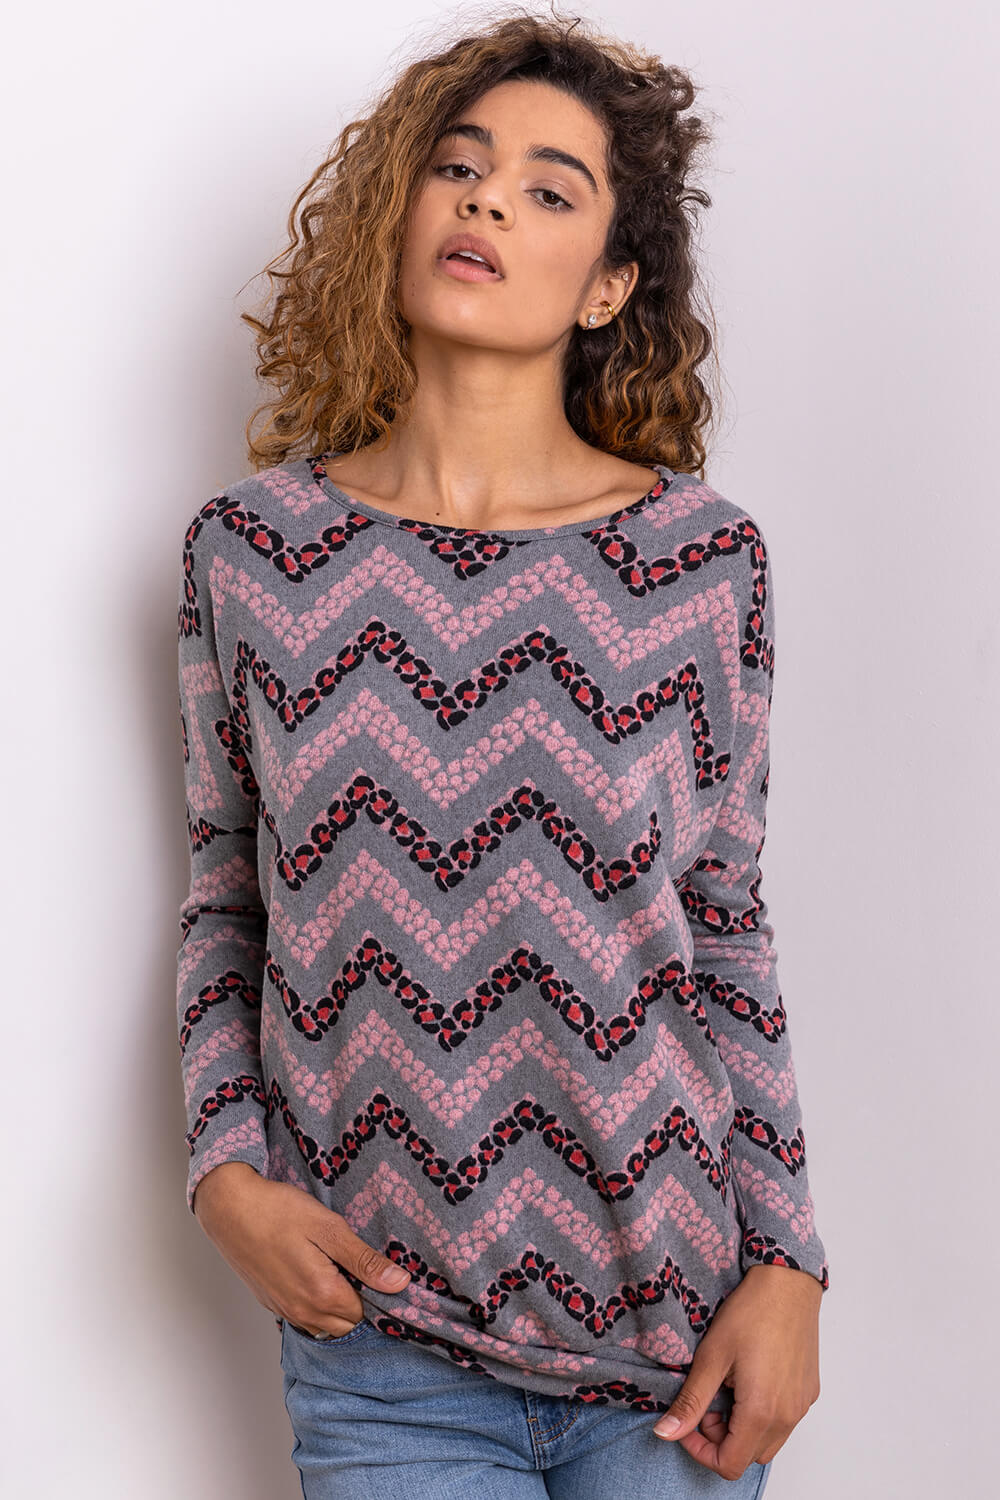 Zig Zag Animal Print Sweater Top in Pink - Roman Originals UK